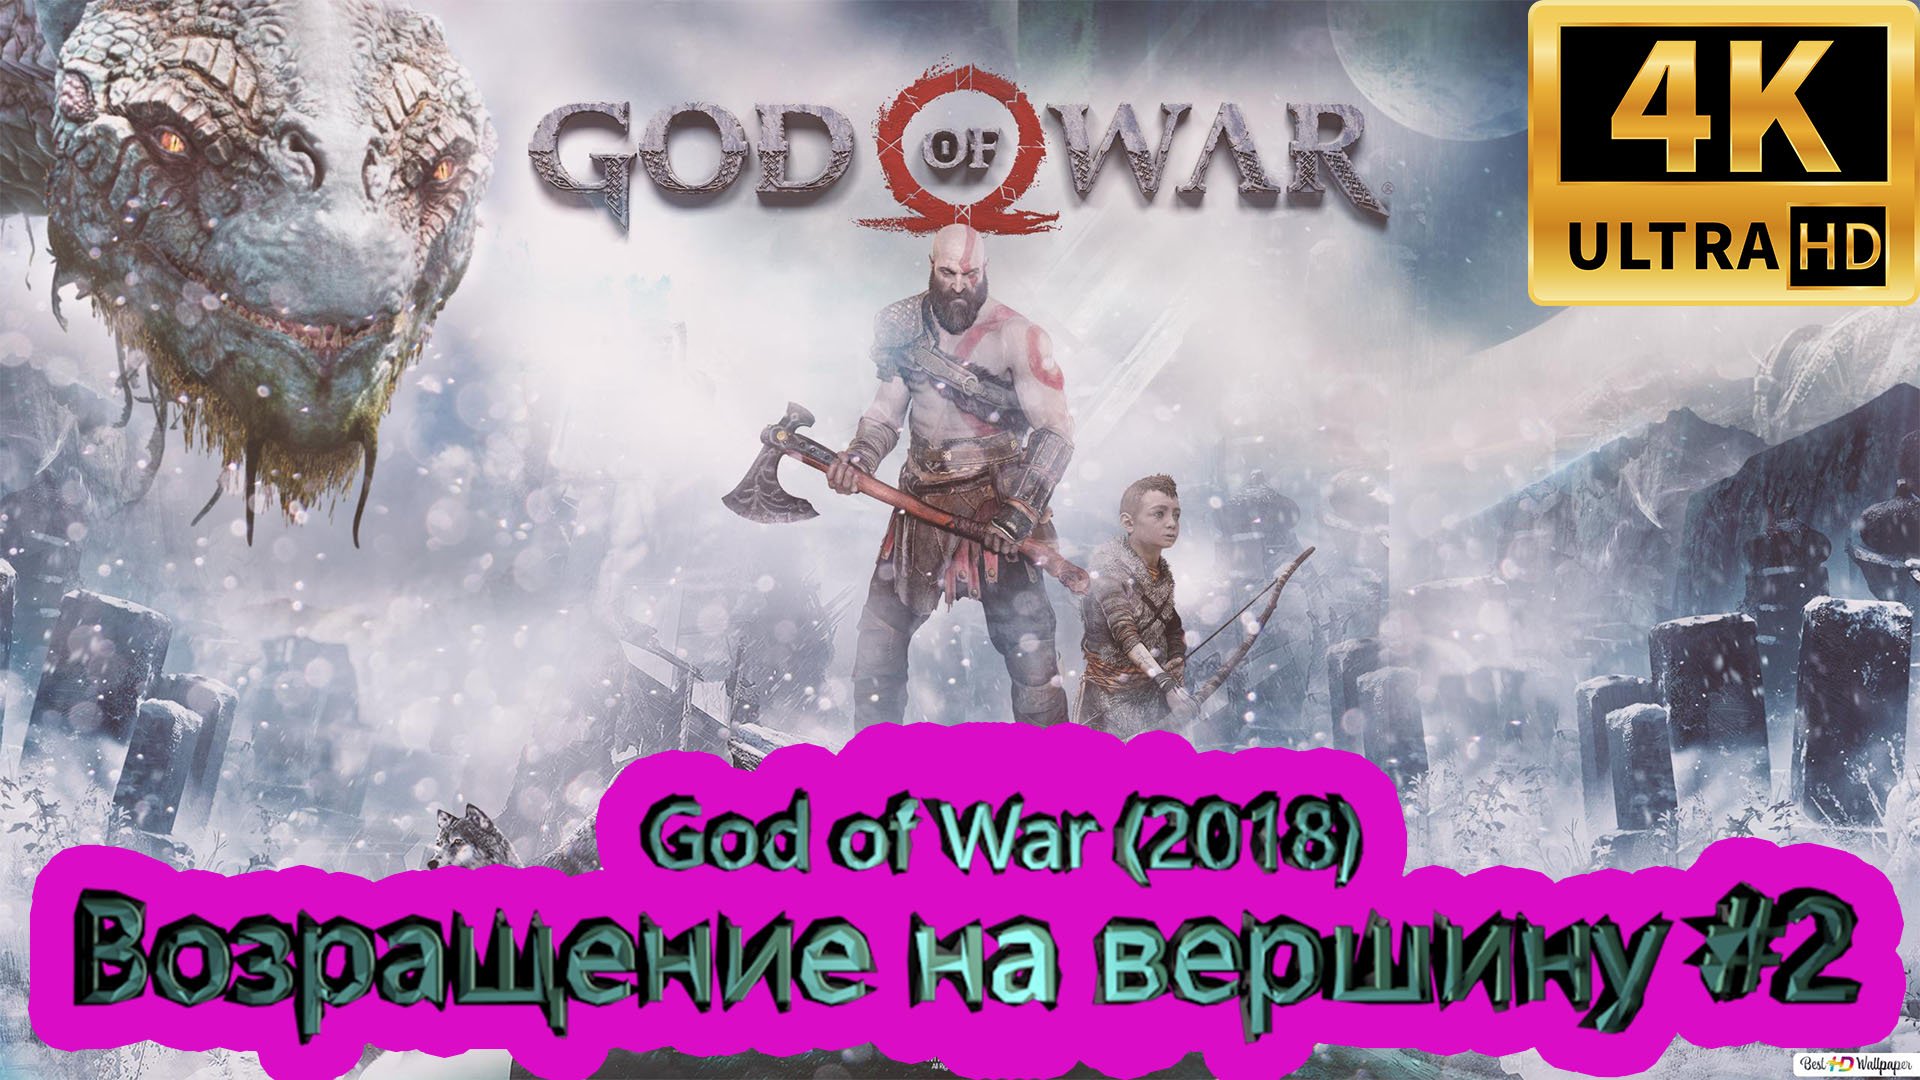 God of War прохождение (2018) [4K]  ► Возращение на вершину #2 ► ГОД ОФ ВАР ► #44 /RTX 3080 Ti